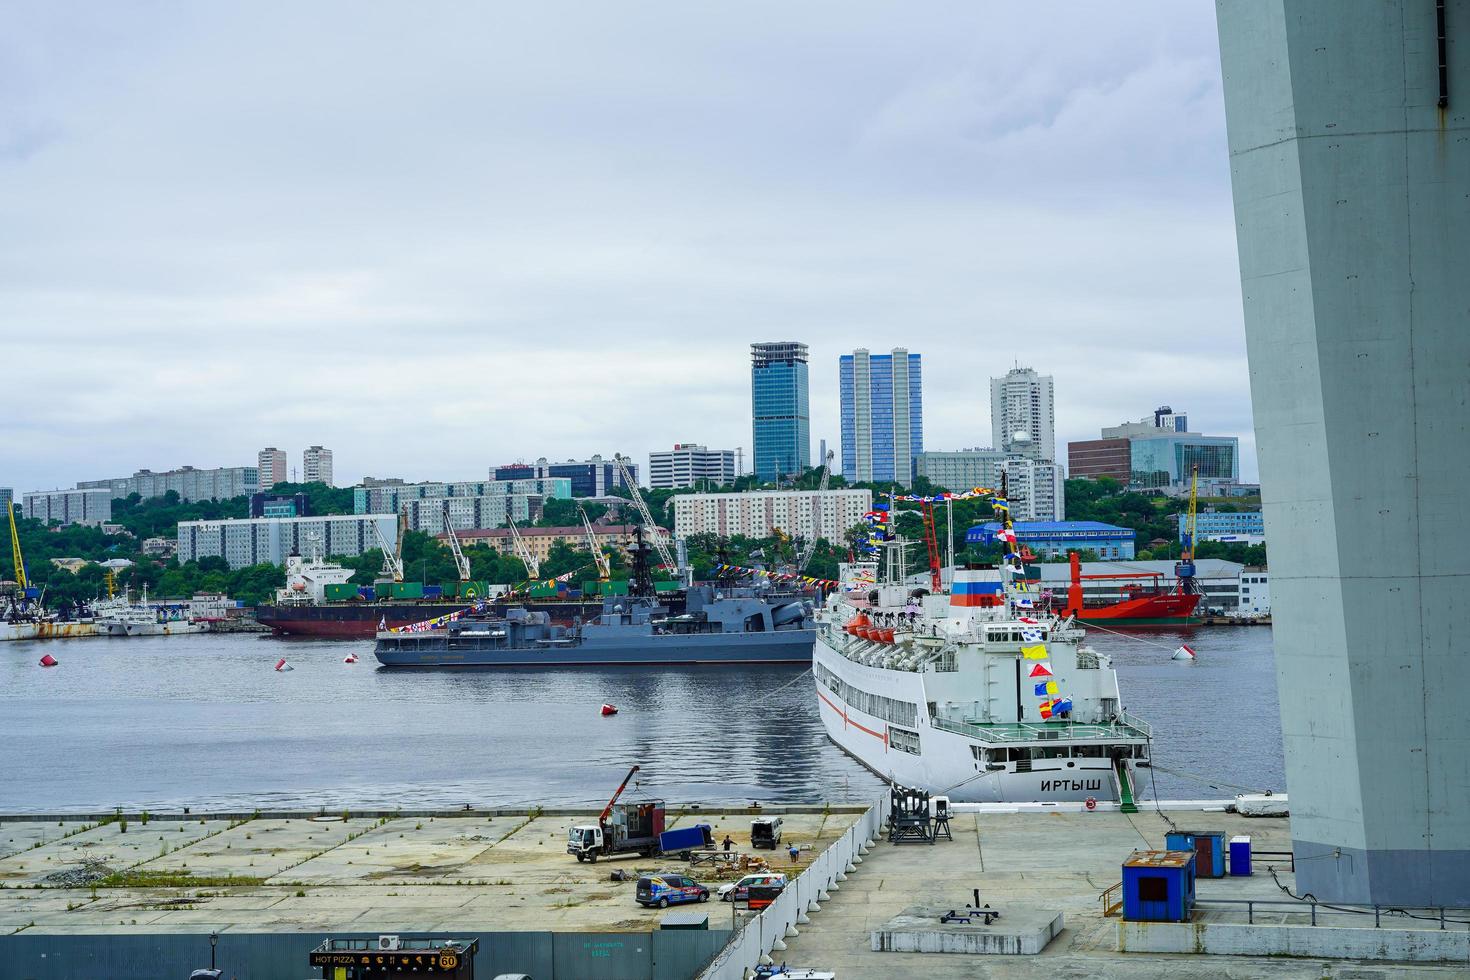 vladivostok, rusia - 26 de julio de 2020 -buques de guerra en el fondo del paisaje urbano. día de la marina. foto